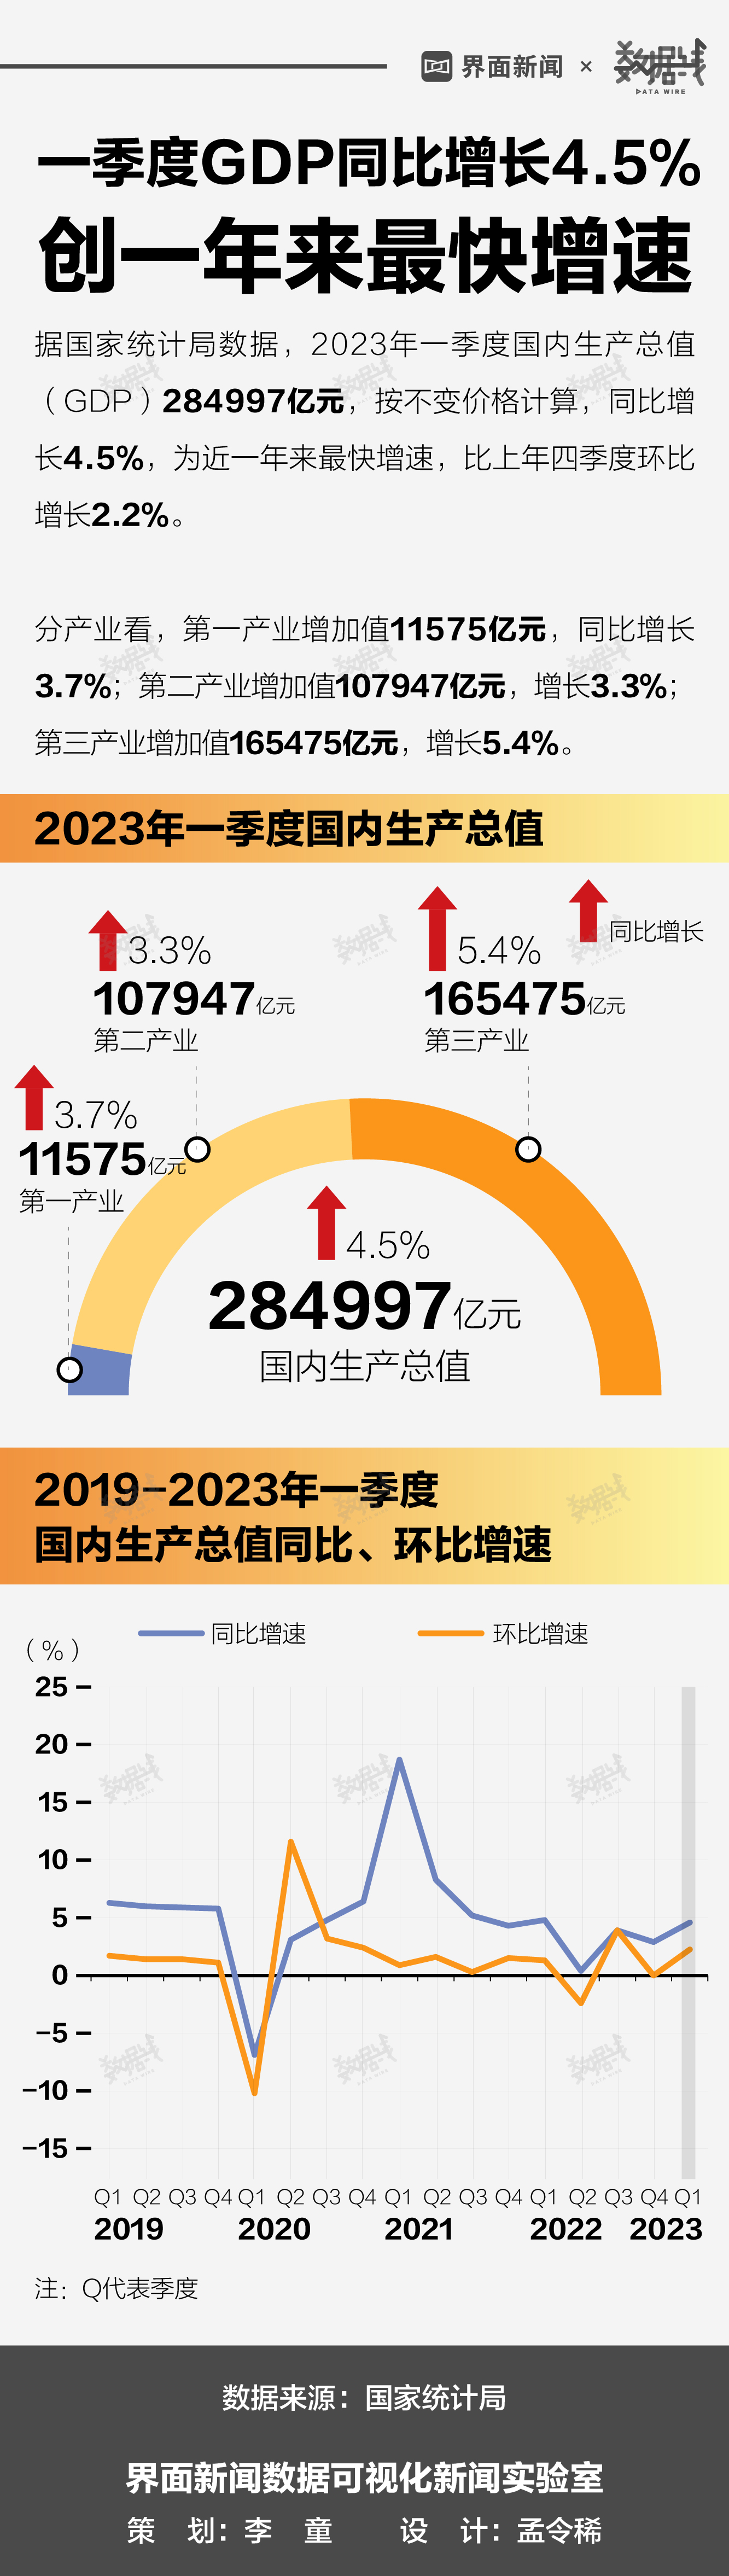 【数据图解】中国8月新增社融1.98万亿元 M2同比增长8.2%_财新数据通频道_财新网